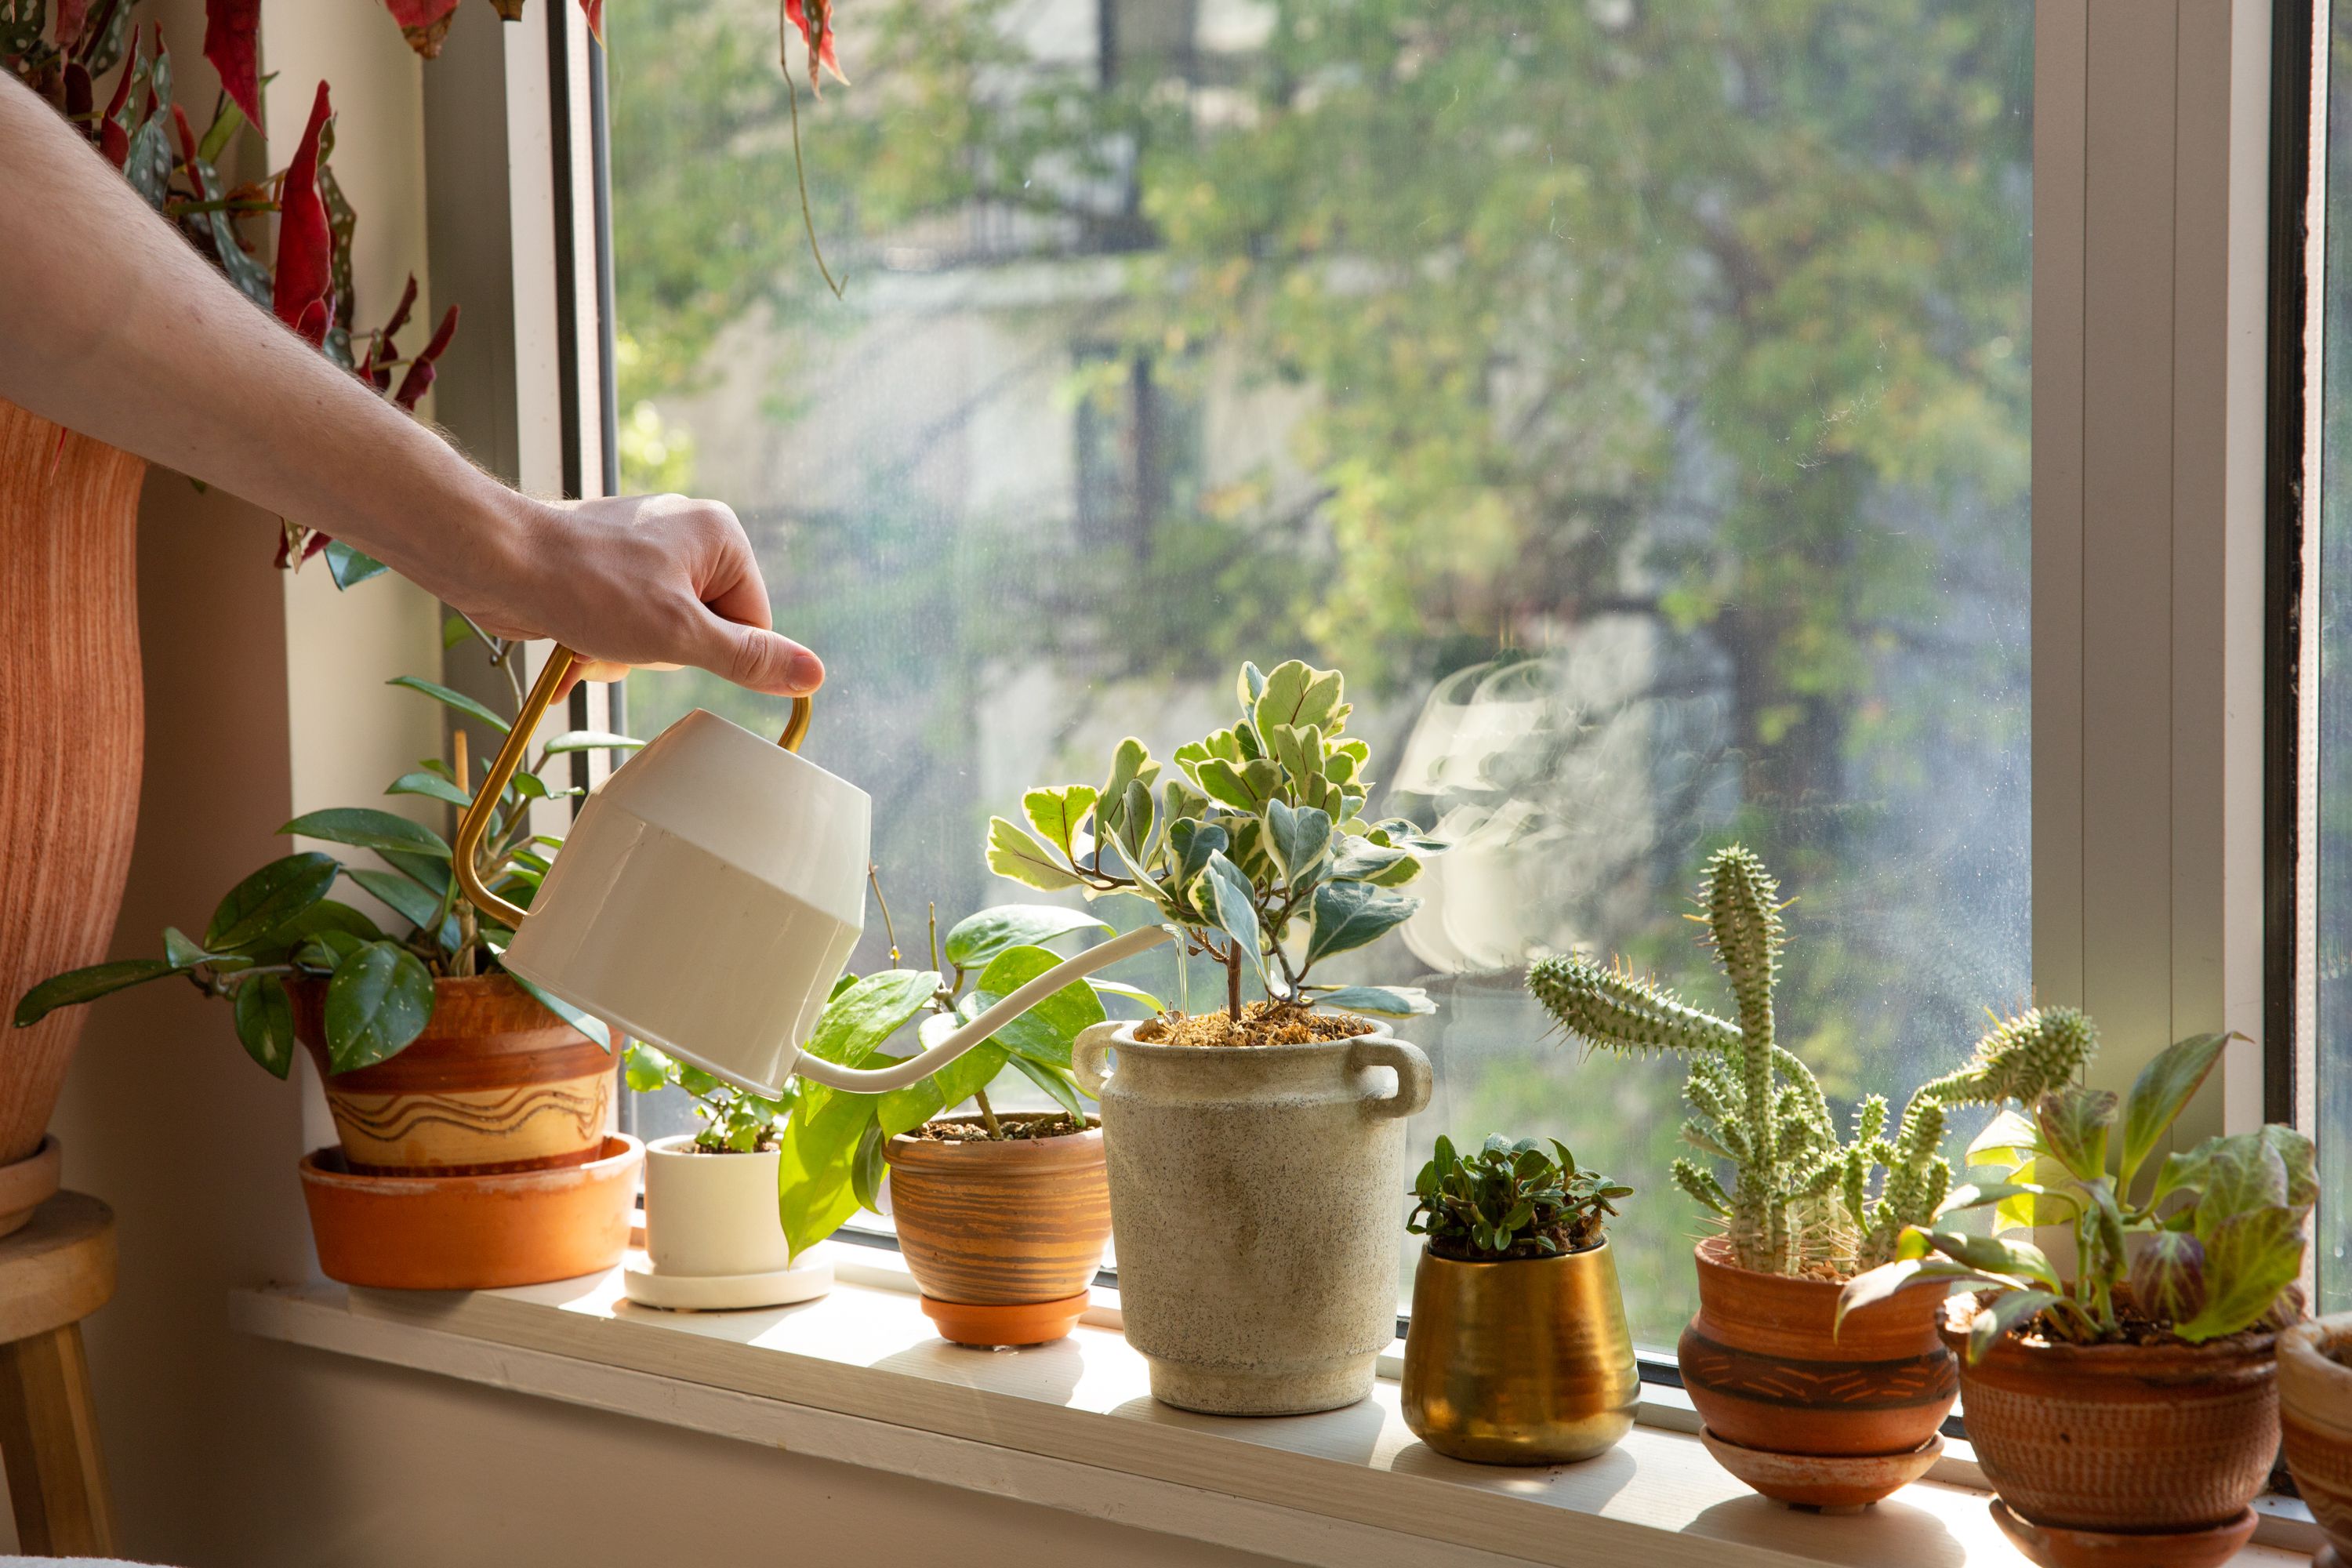 რა უნდა იცოდეთ, თუ ზაფხულის სიცხეში ოთახის მცენარეებს რამდენიმე დღით ტოვებთ